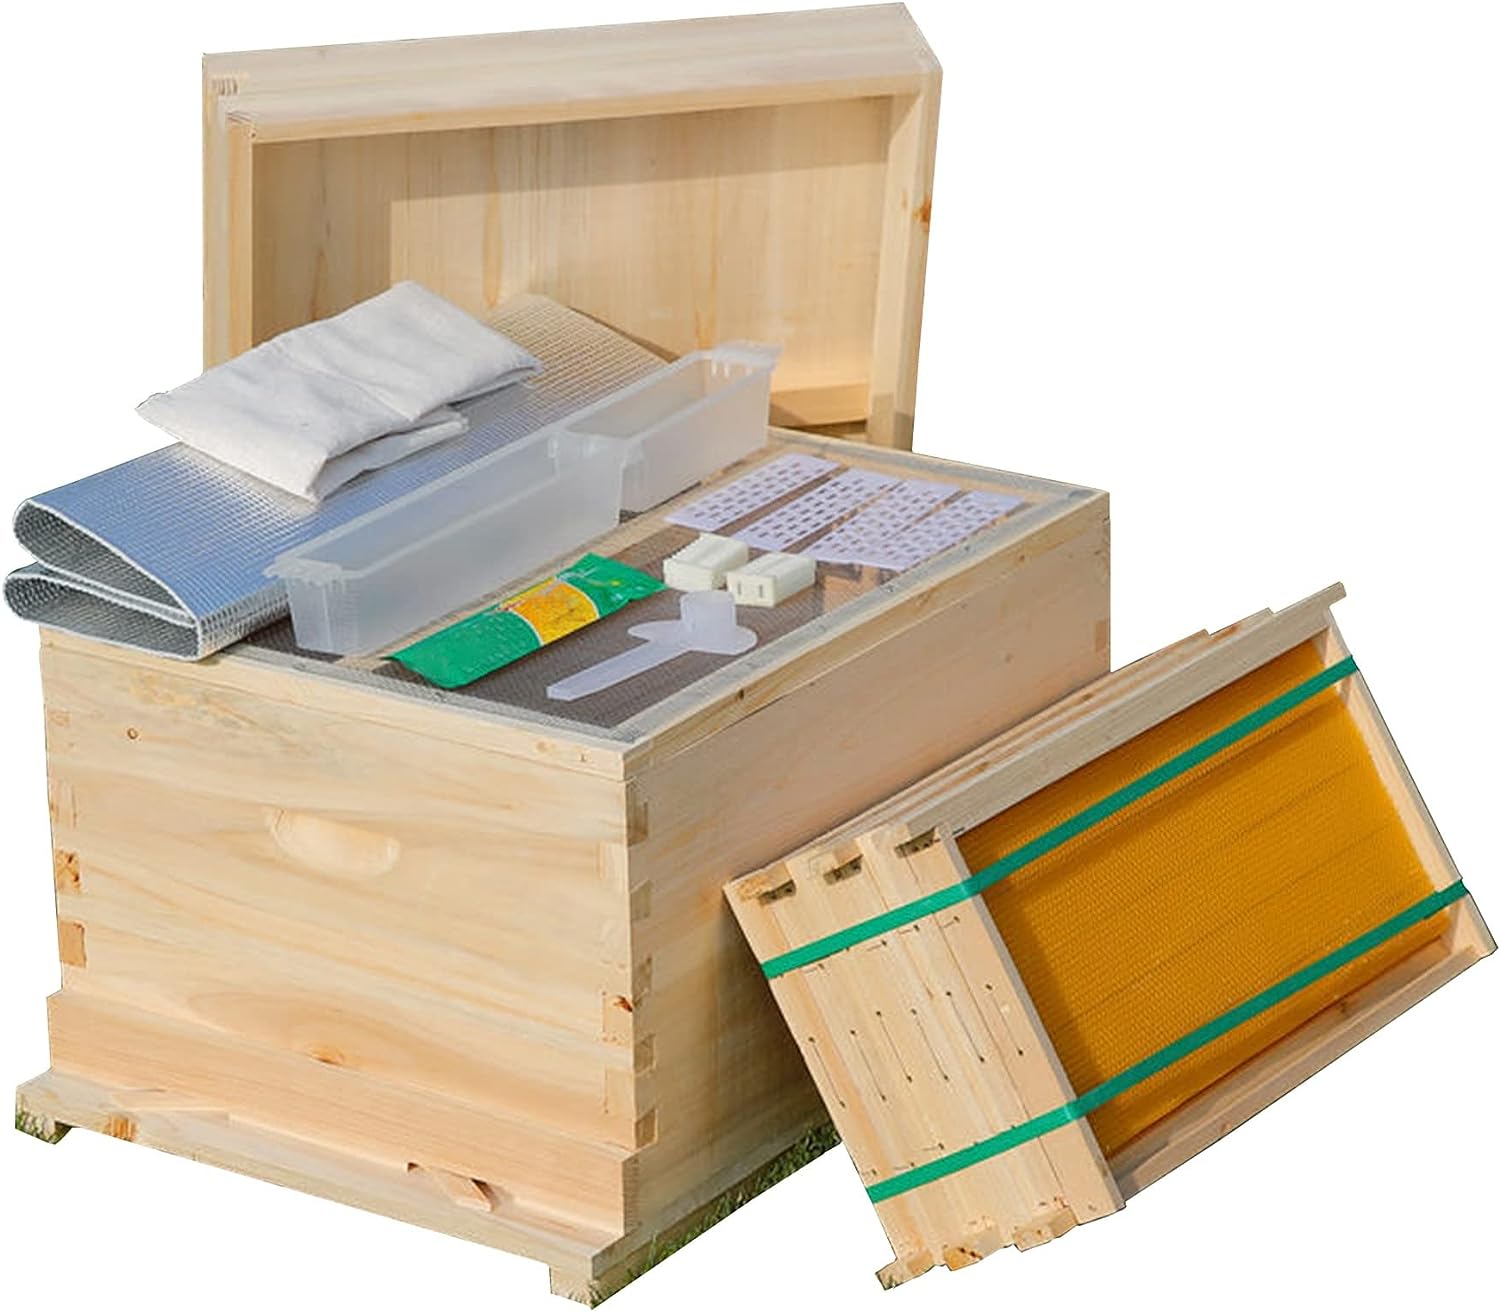 ミツバチ 巣箱 養蜂 巣箱 キットミツバチの巣箱 蜂蜜箱 10フレーム 